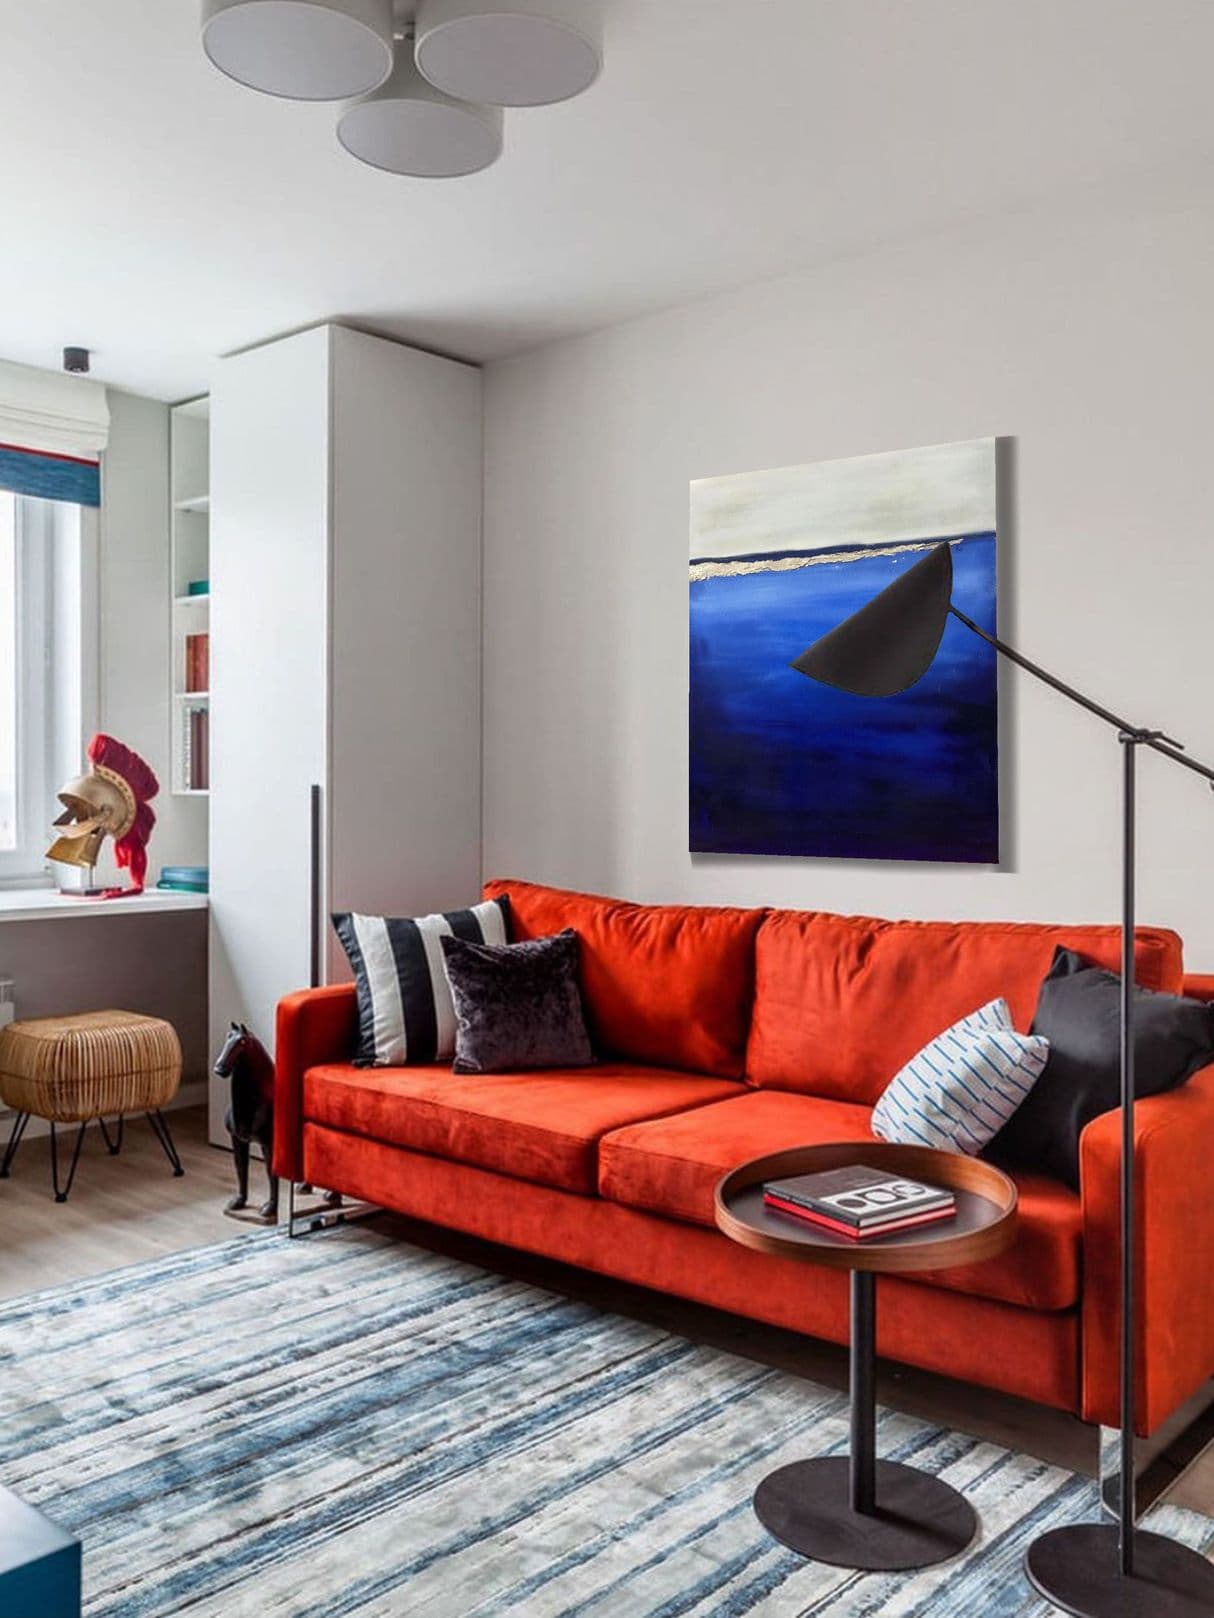 синяя картина в интерьере с красным диваном